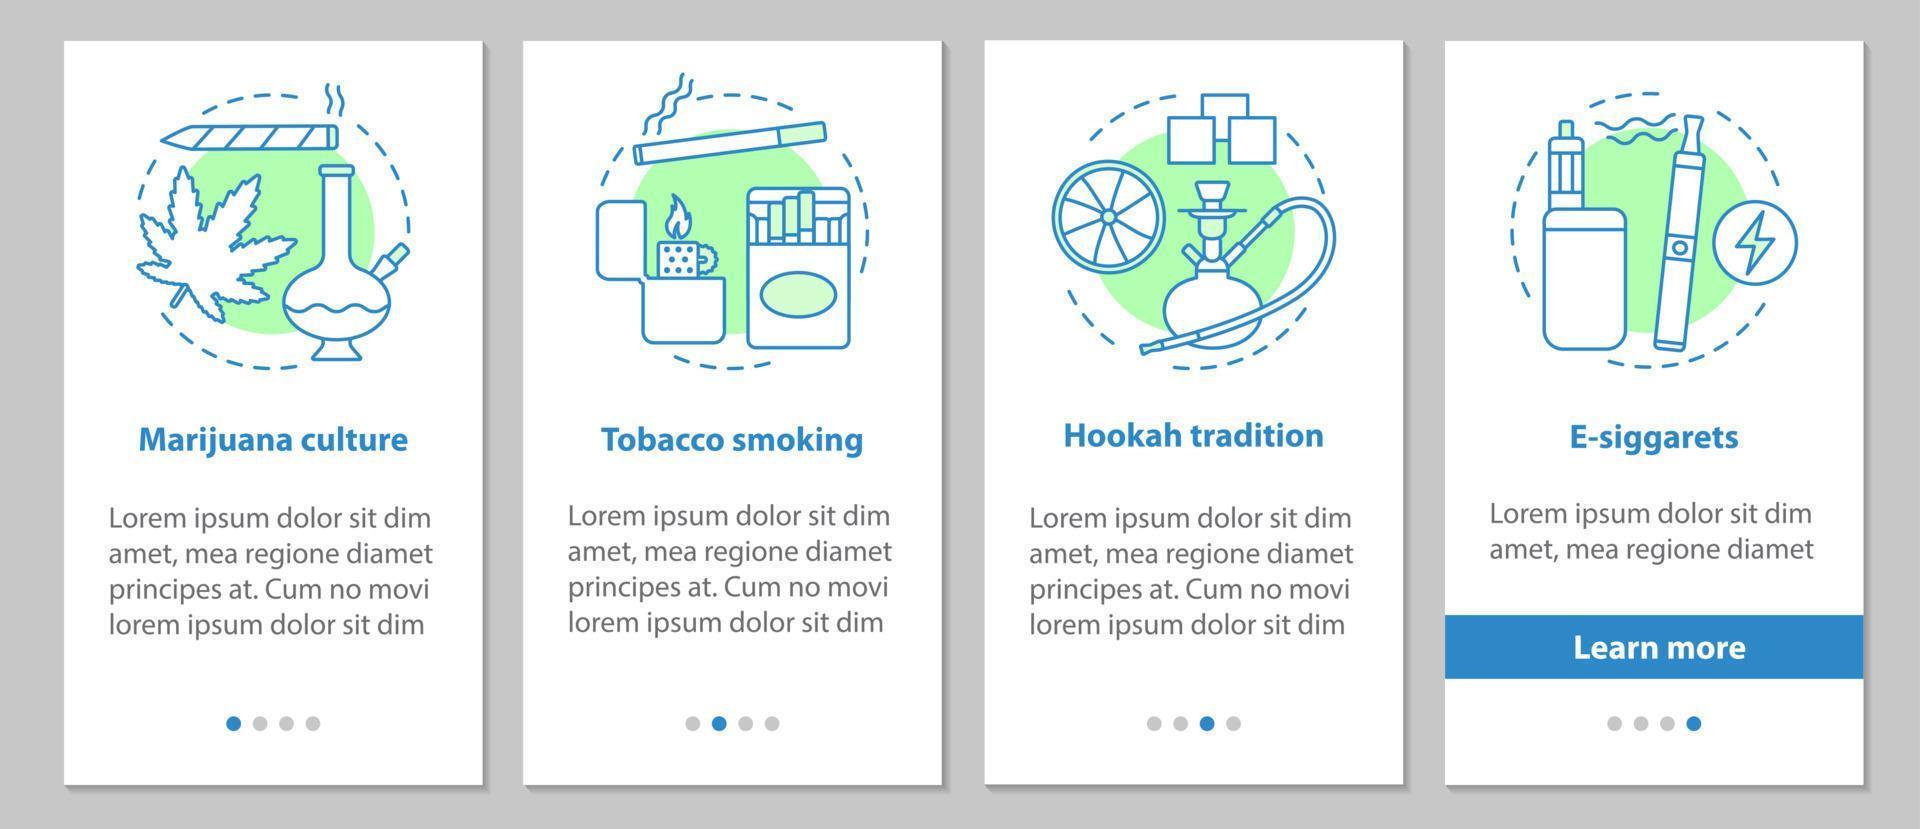 fumar a tela da página do aplicativo móvel de integração com conceitos. cultura da maconha, tabagismo, cigarros eletrônicos, a tradição do narguilé dá instruções gráficas. ux, ui, modelo de vetor gui com ilustrações